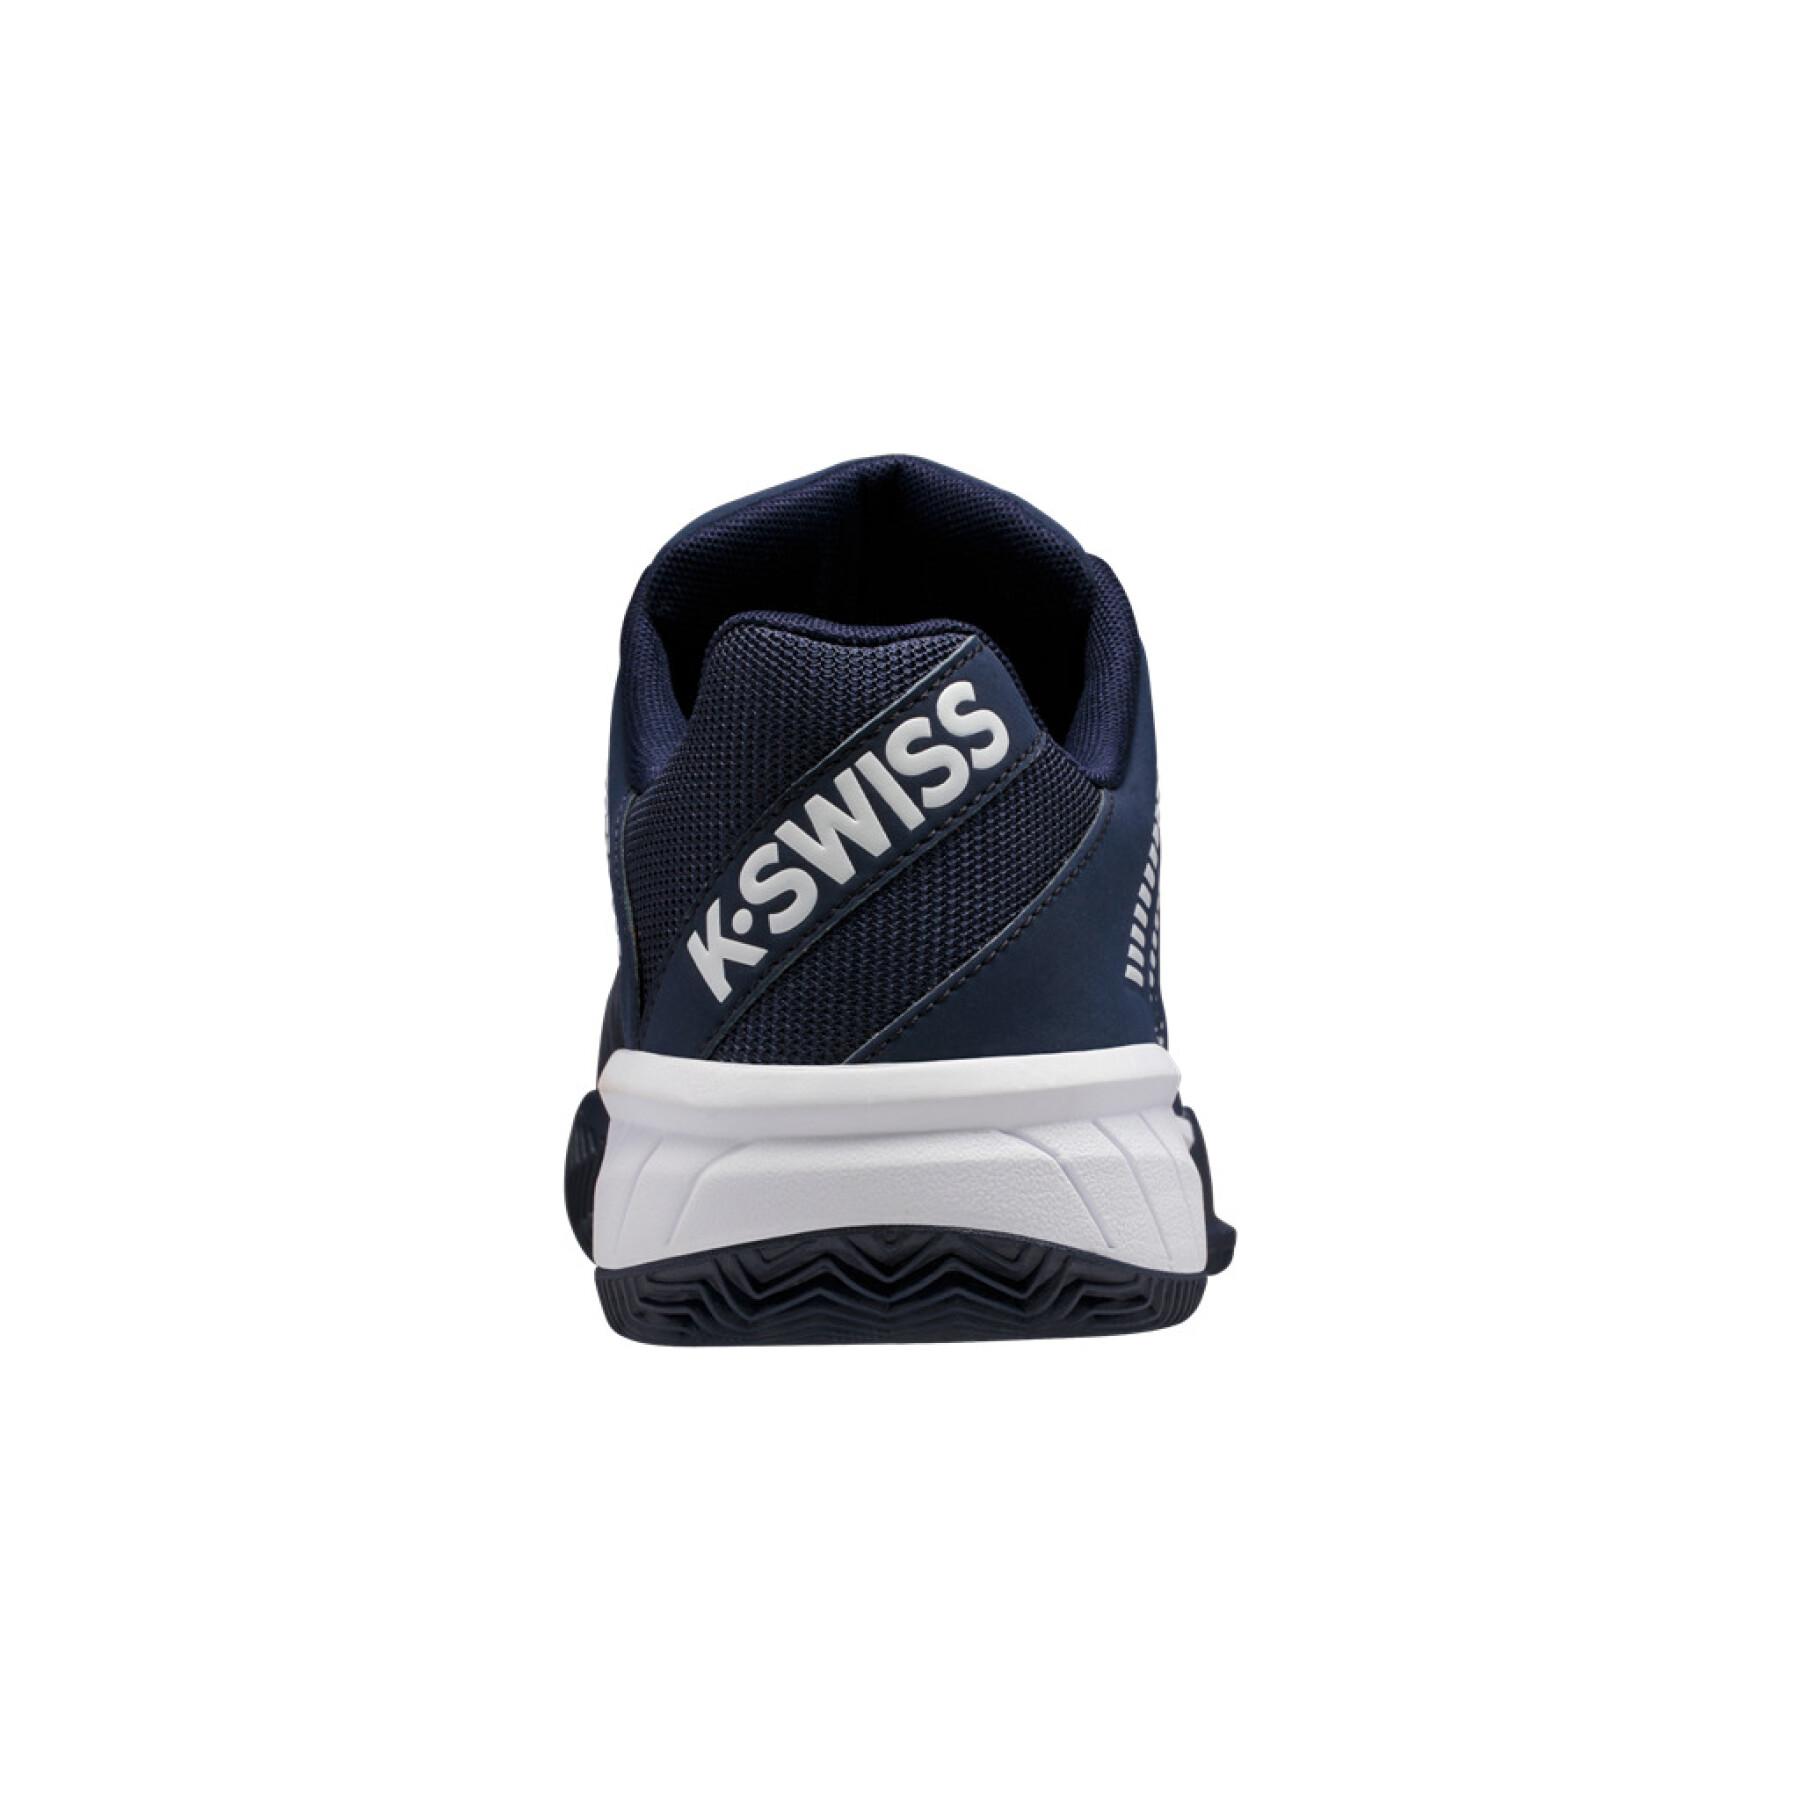 Chaussures K-Swiss express light 2 hb